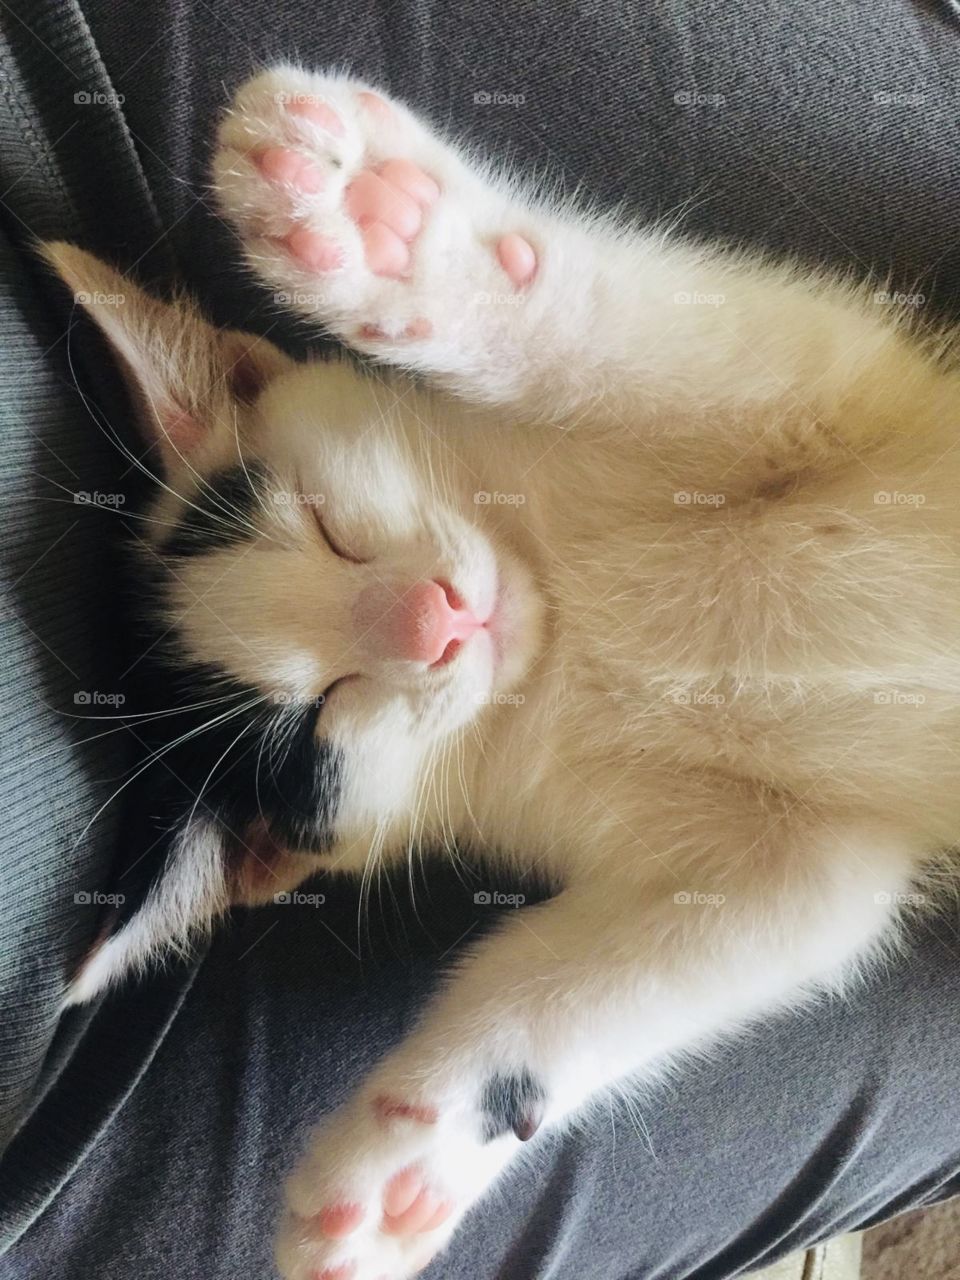 Cutie little sleepyhead 💕